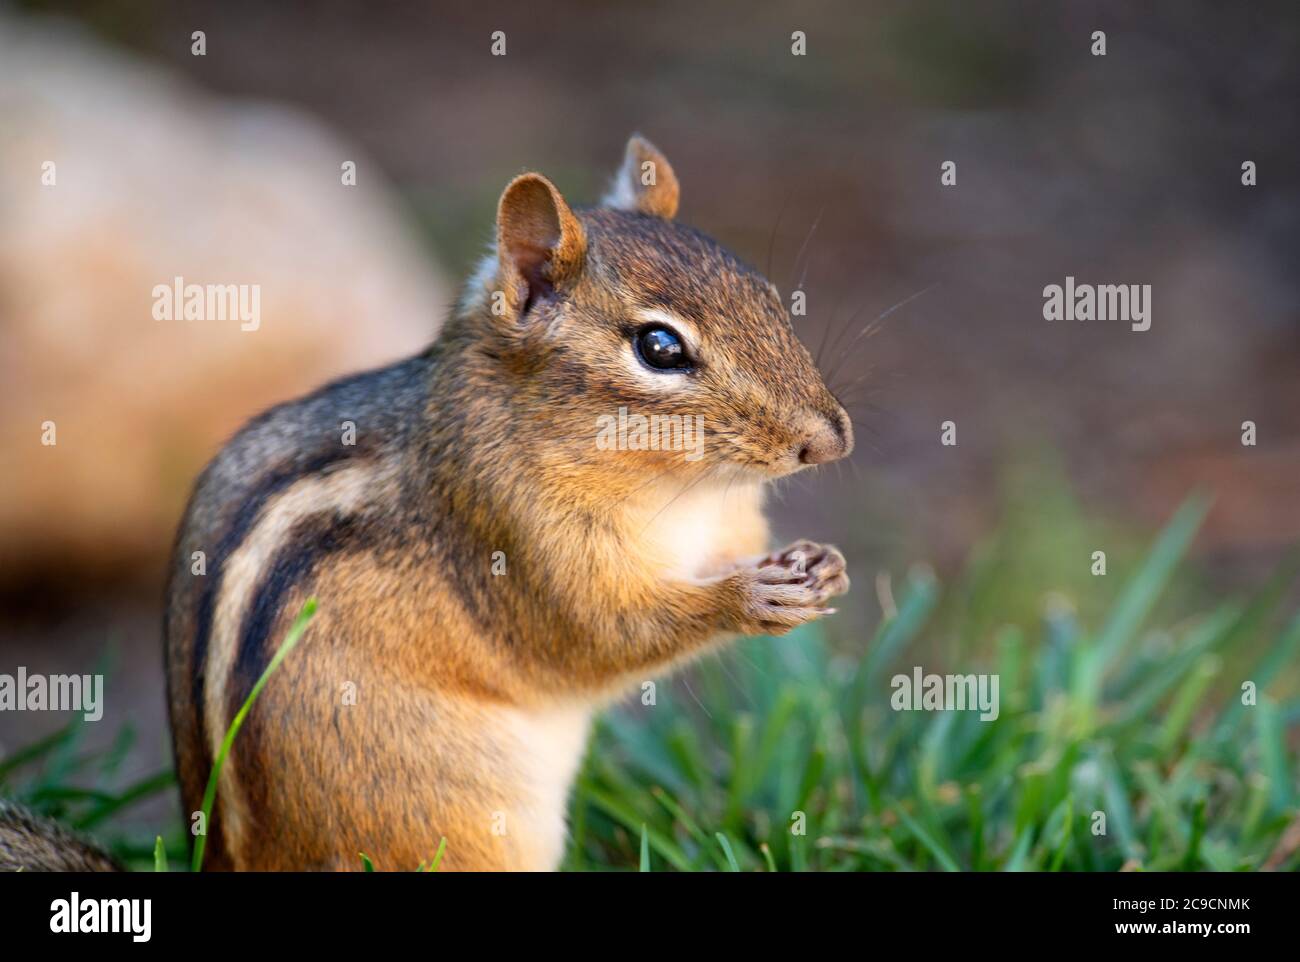 A Chipmunk (Sciuridae) on a Cape Cod lawn, USA Stock Photo